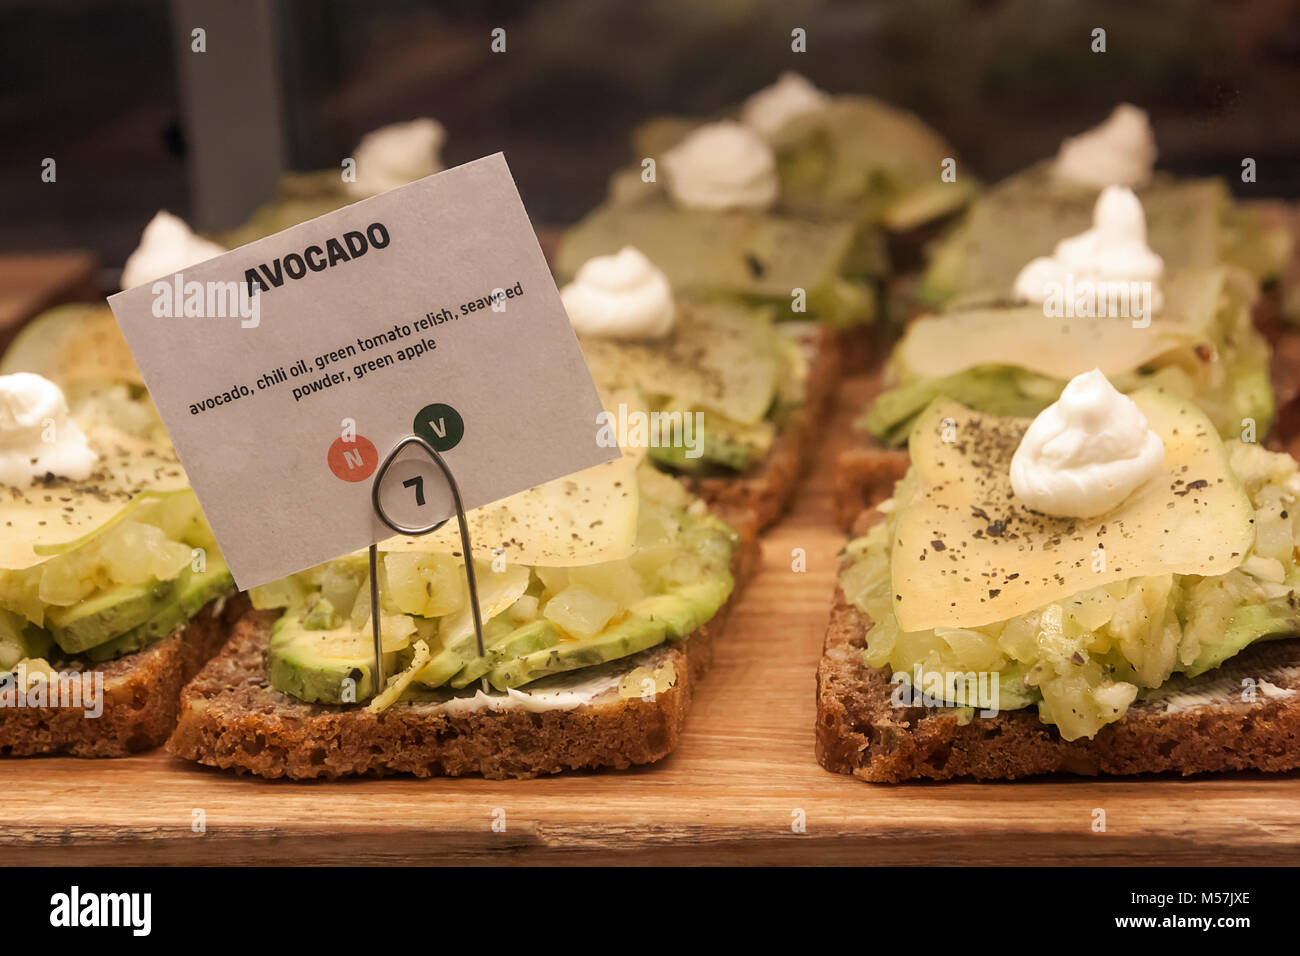 Segno per un avocado sandwich aperto sul display in un food court restaurant. Foto Stock